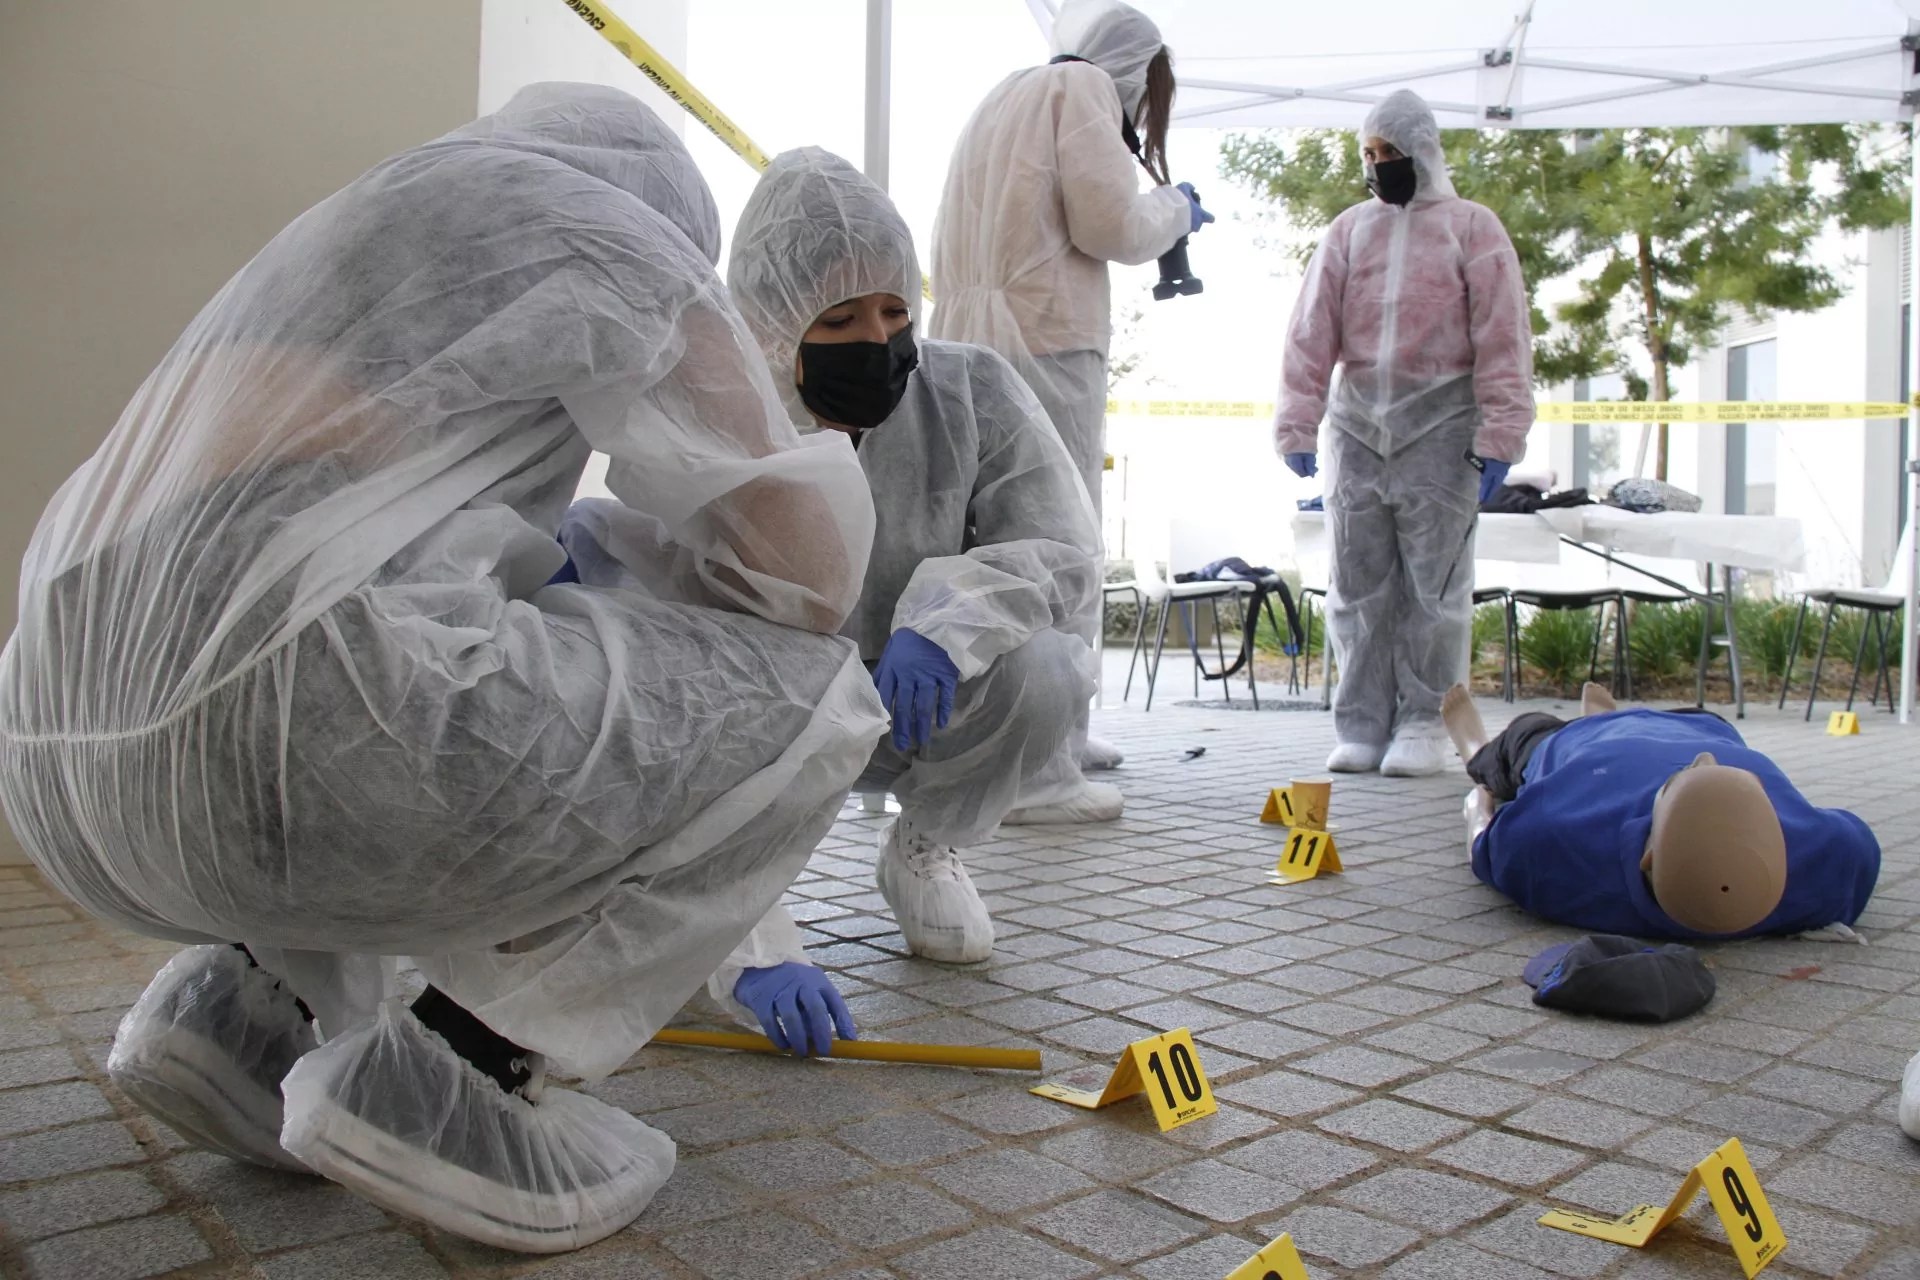 Estudiantes realizan prácticas forenses en la escena de un crimen simulado